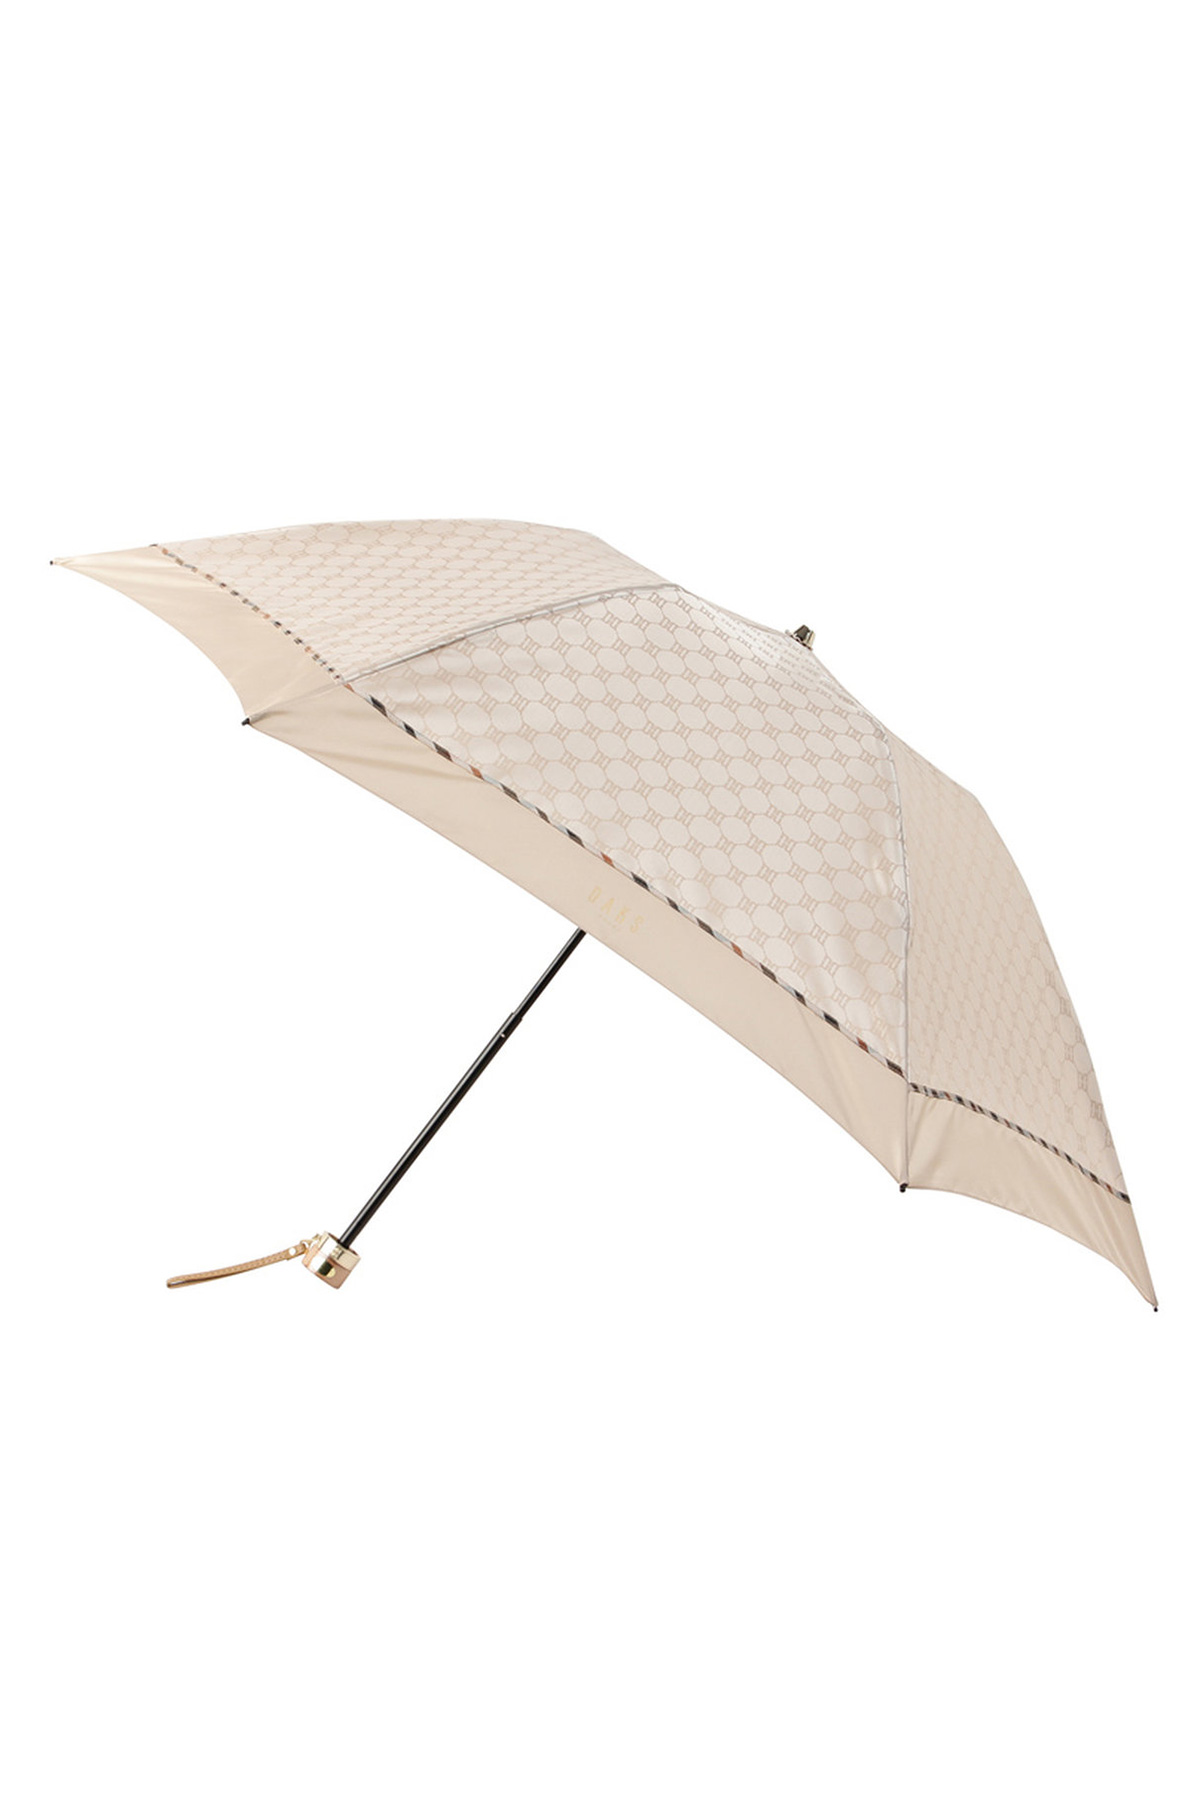 【雨傘】折りたたみ傘クイックアーチジャカード 詳細画像 2